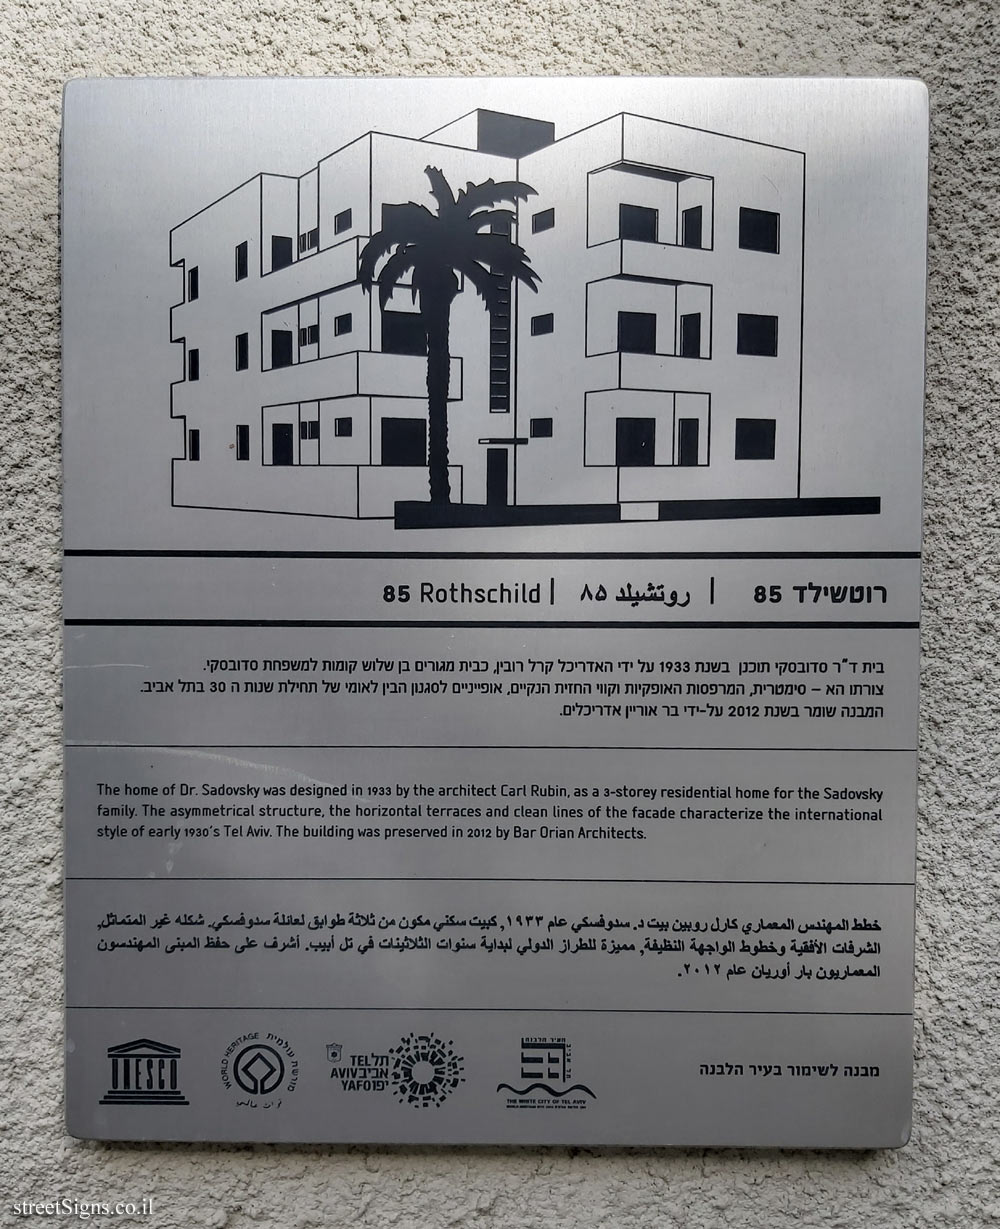 Tel Aviv - buildings for conservation - 85 Rothschild